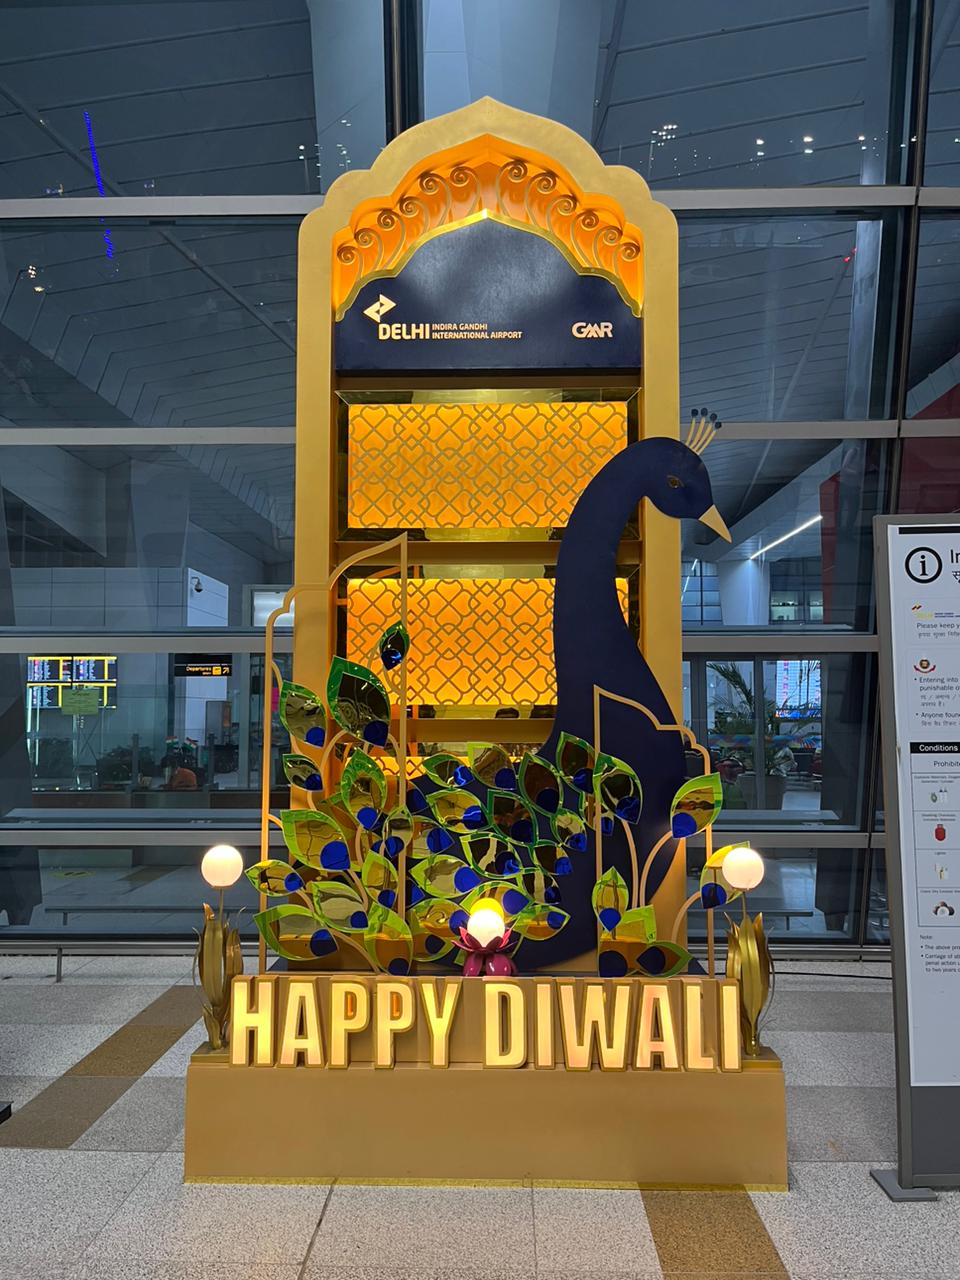 Diwali greetings at Delhi Airport